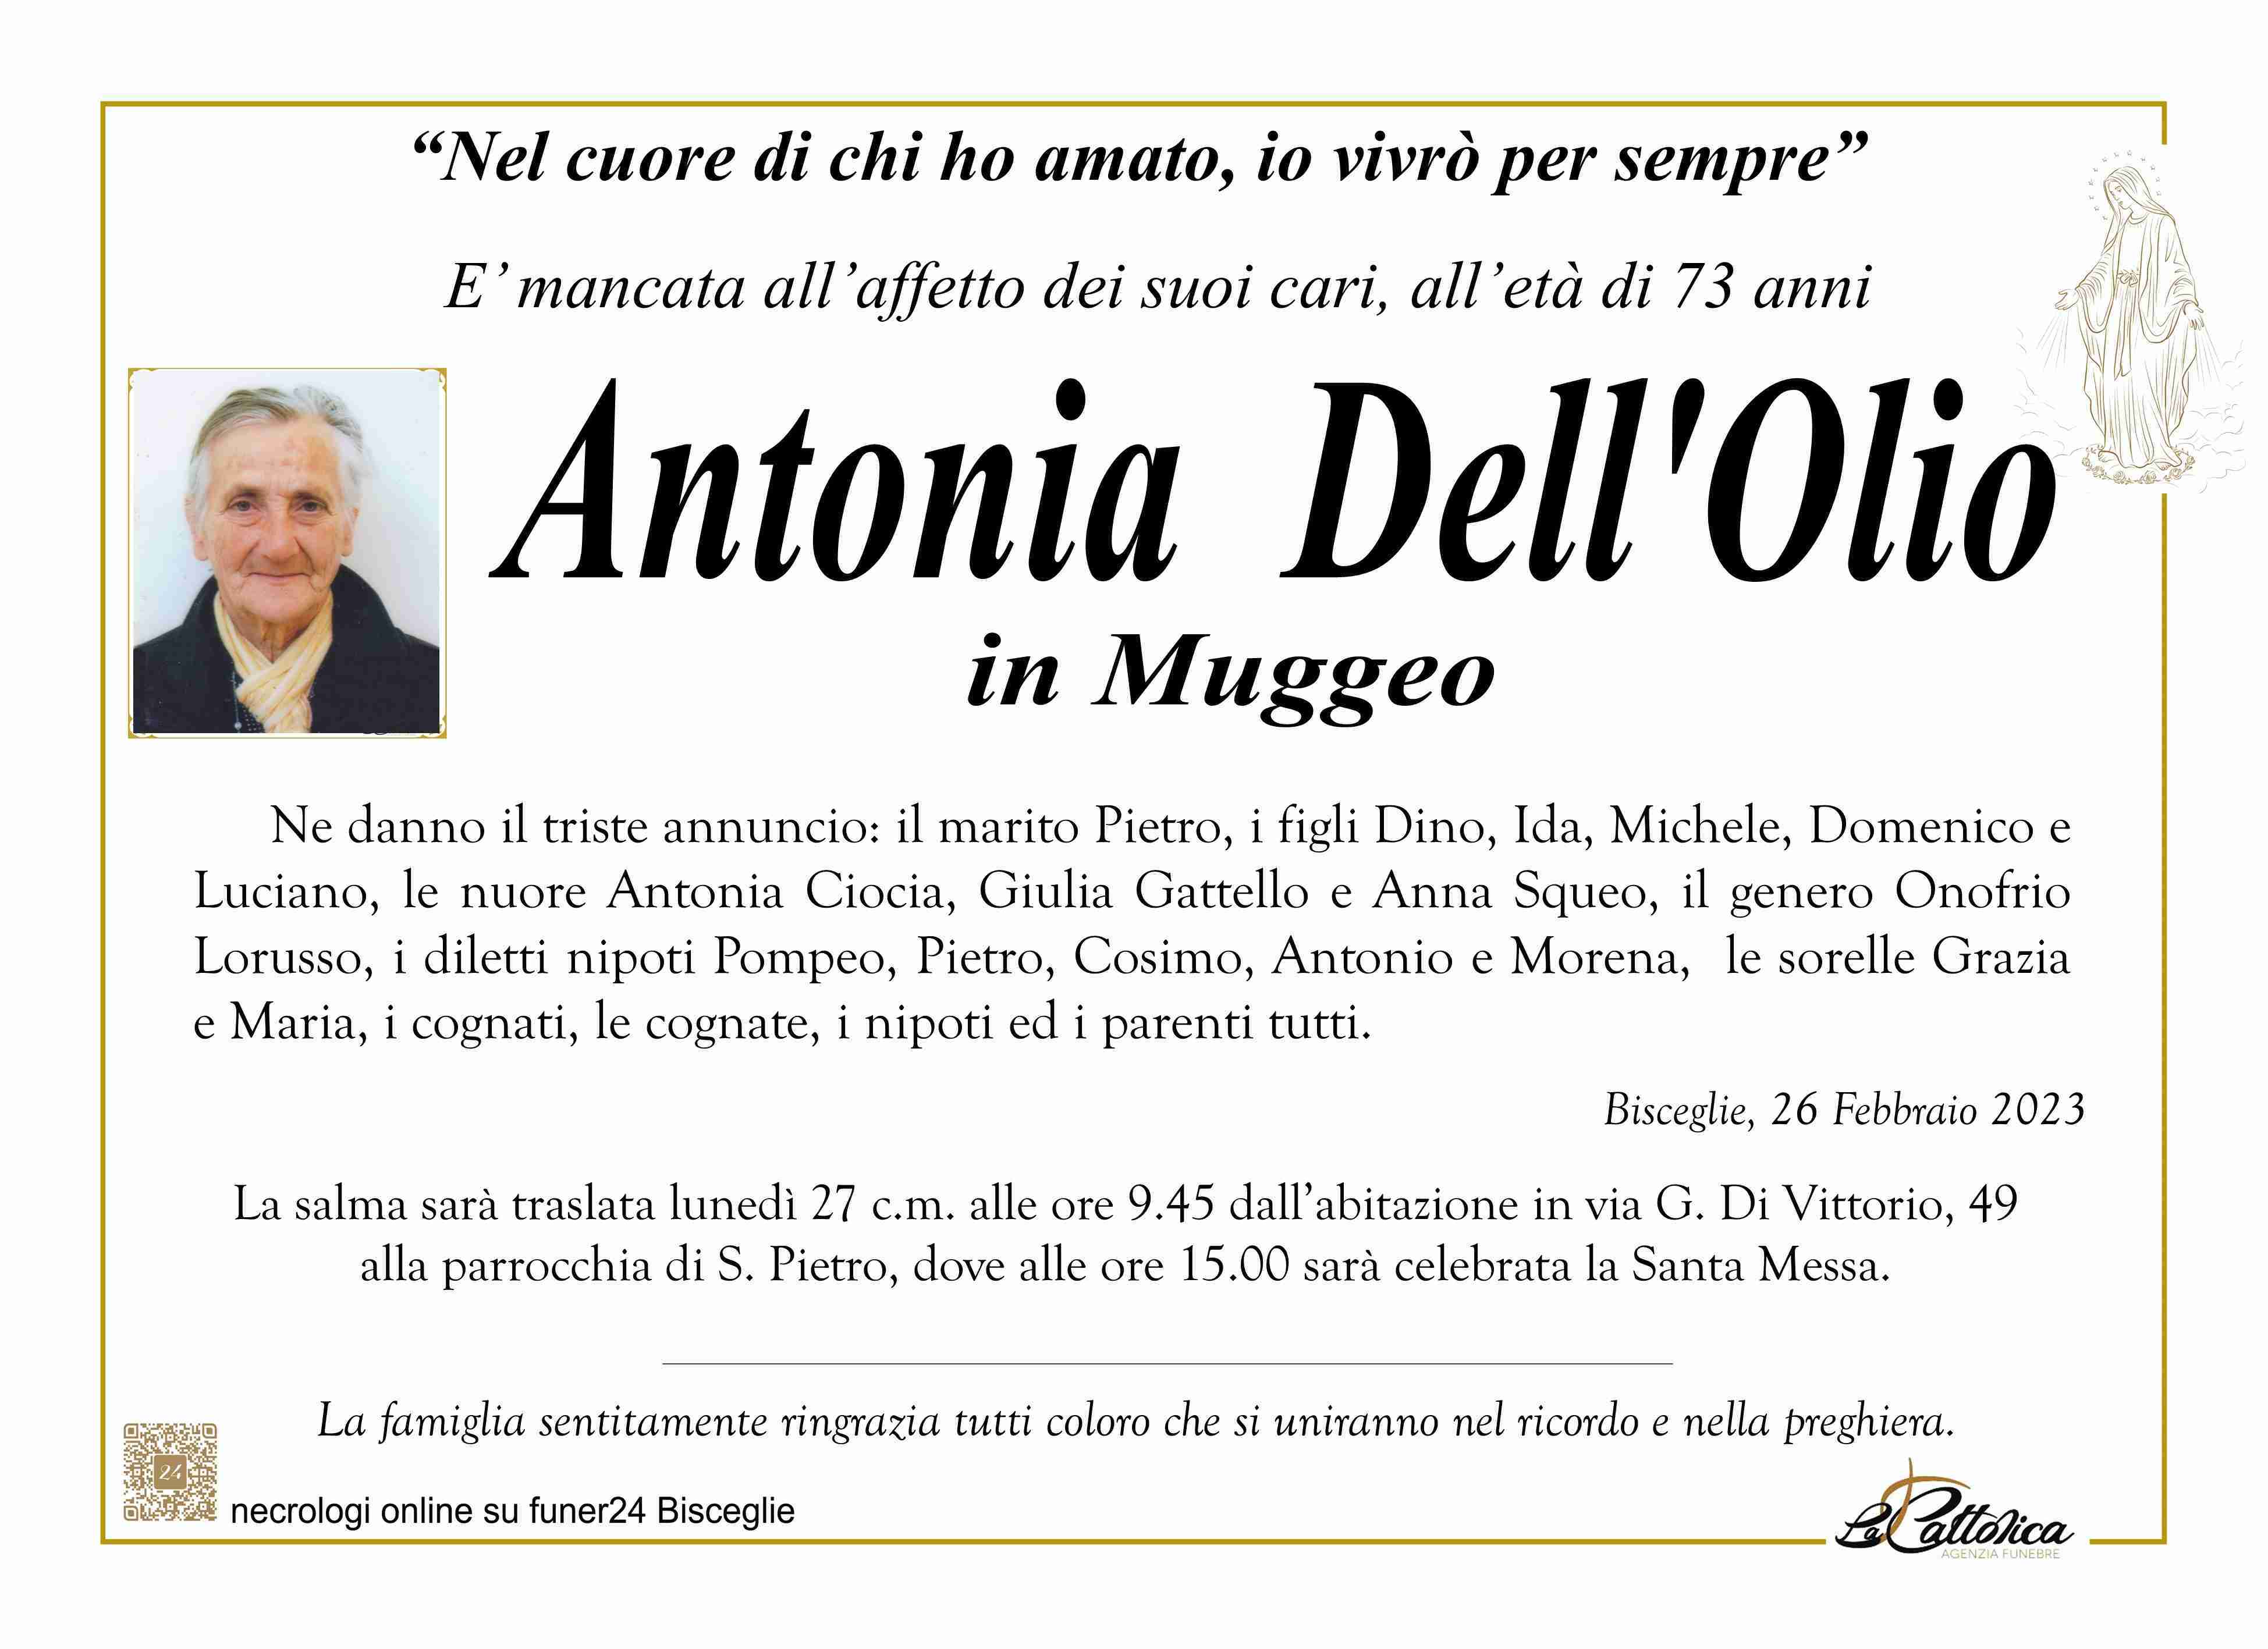 Antonia Dell'Olio